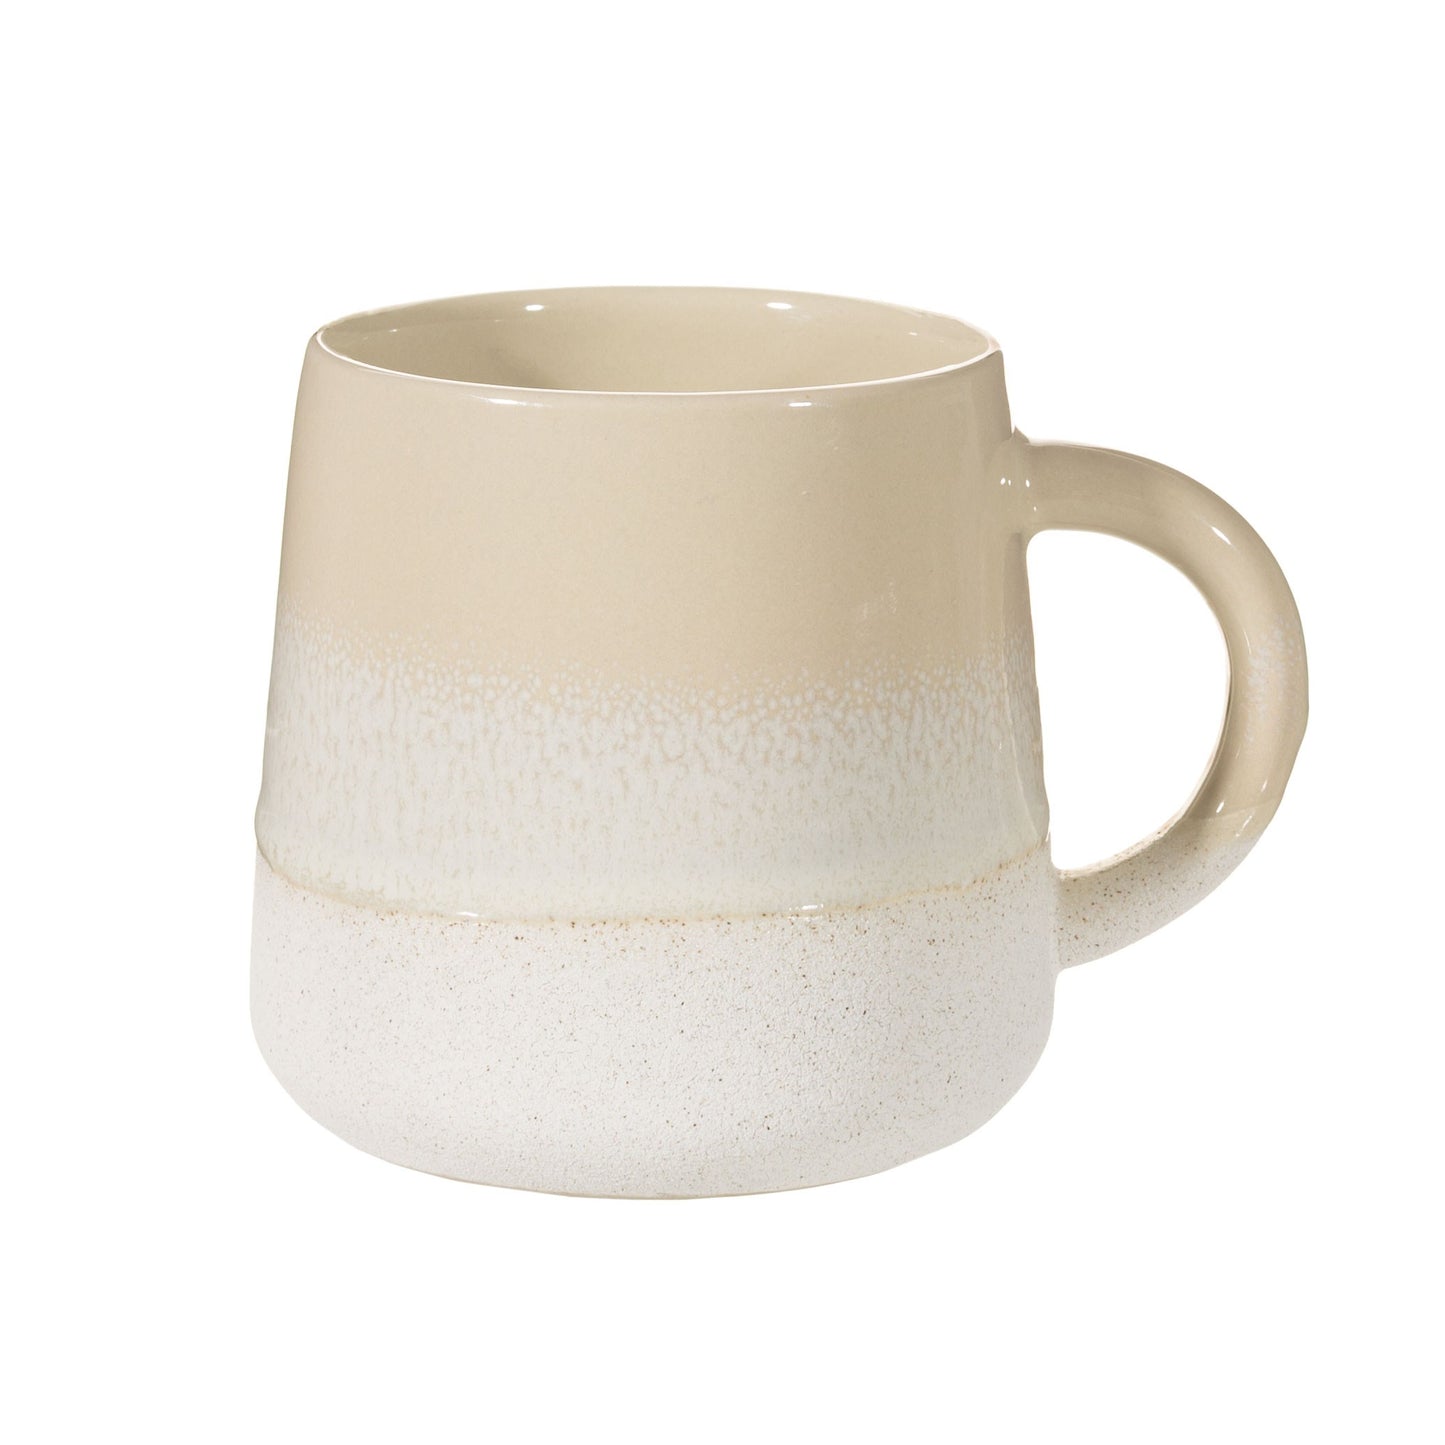 Mojave Glazed Mug - Cream